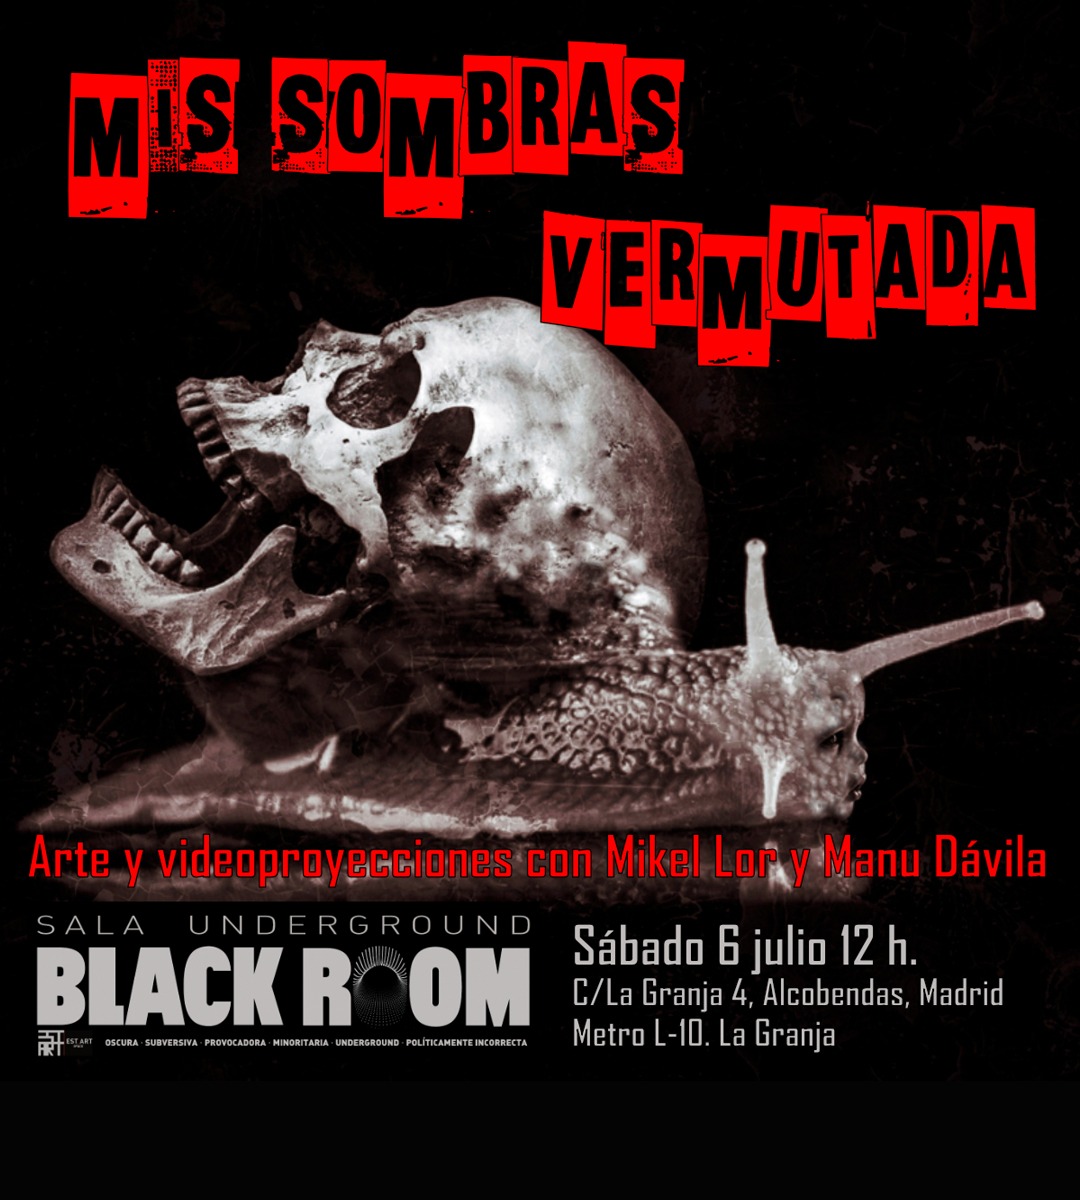 Vermutada | Mis sombras, Mikel Lor, BLACK ROOM, EST_ART Space Alcobendas, Madrid